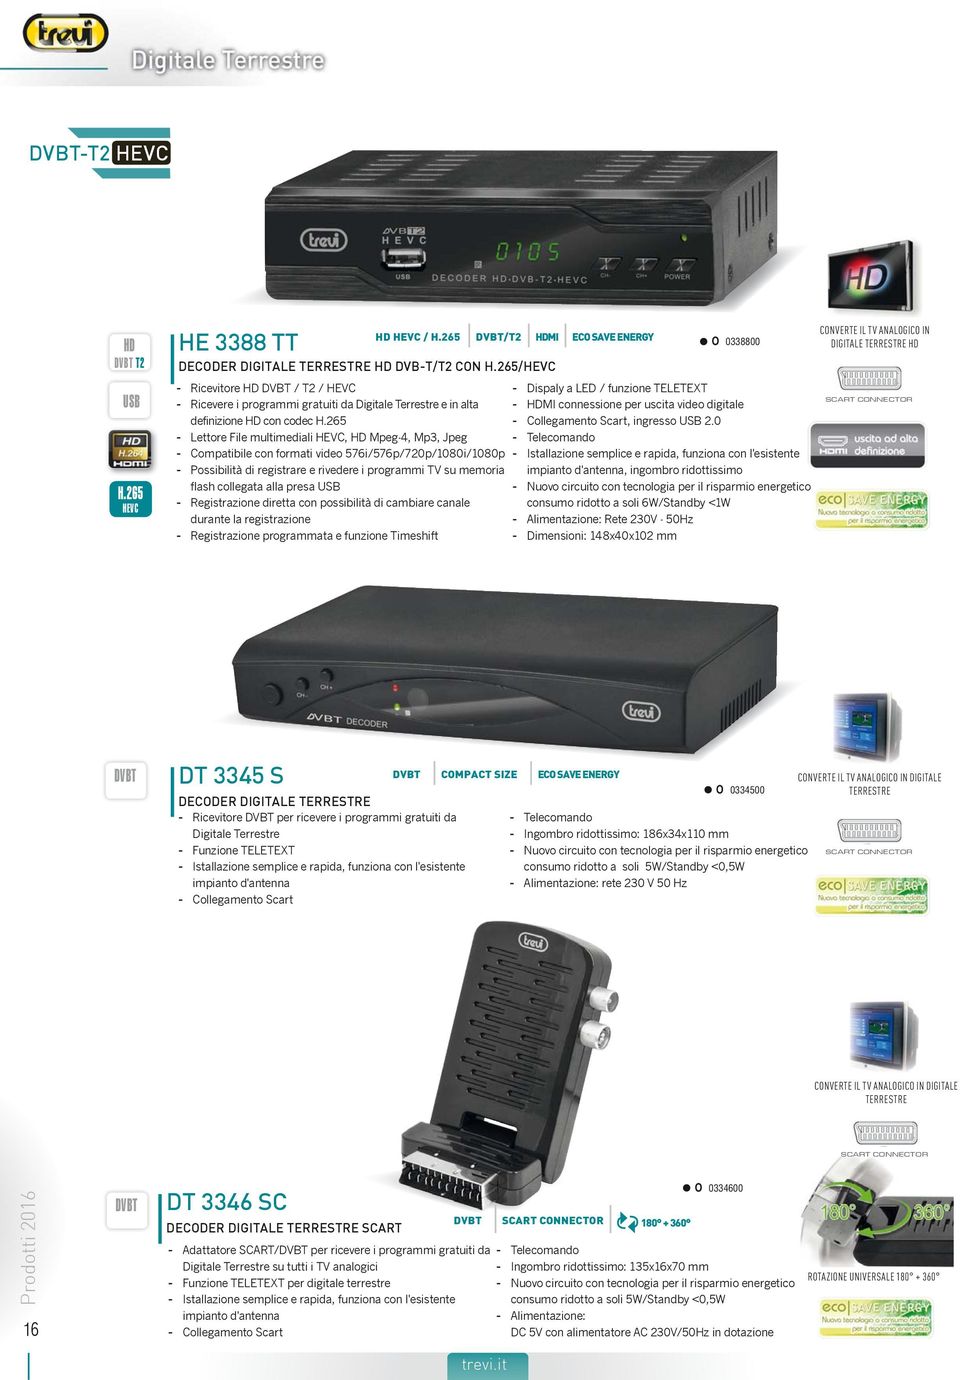 265 - Lettore File multimediali HEVC, Mpeg-4, Mp3, Jpeg - Compatibile con formati video 576i/576p/720p/1080i/1080p - Possibilità di registrare e rivedere i programmi TV su memoria flash collegata